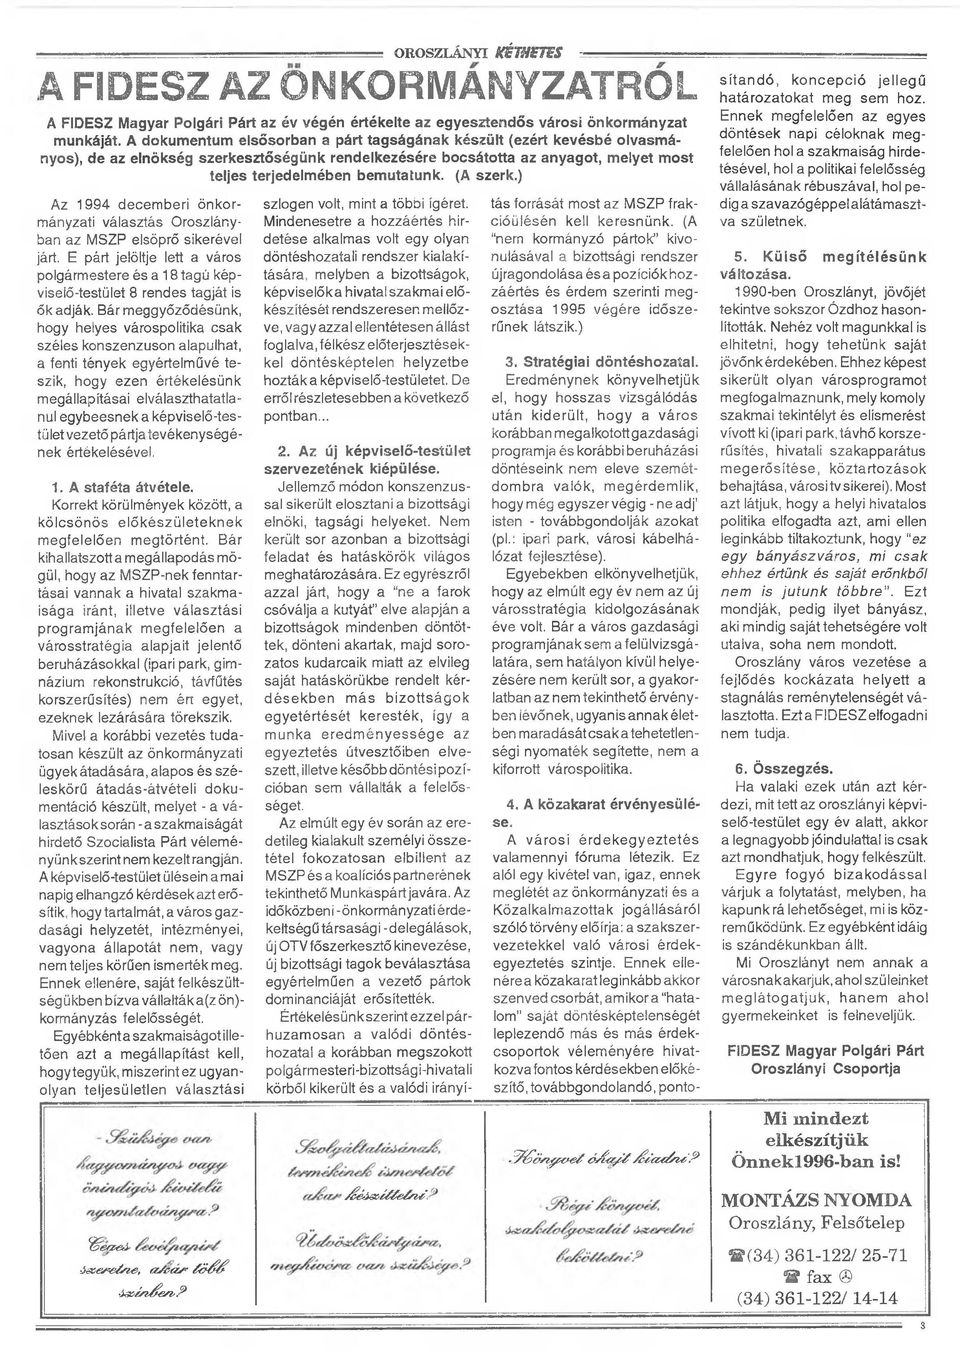 (A szerk.) Az 1994 decemberi önkormányzati választás Oroszlányban az MSZP elsöprő sikerével járt.